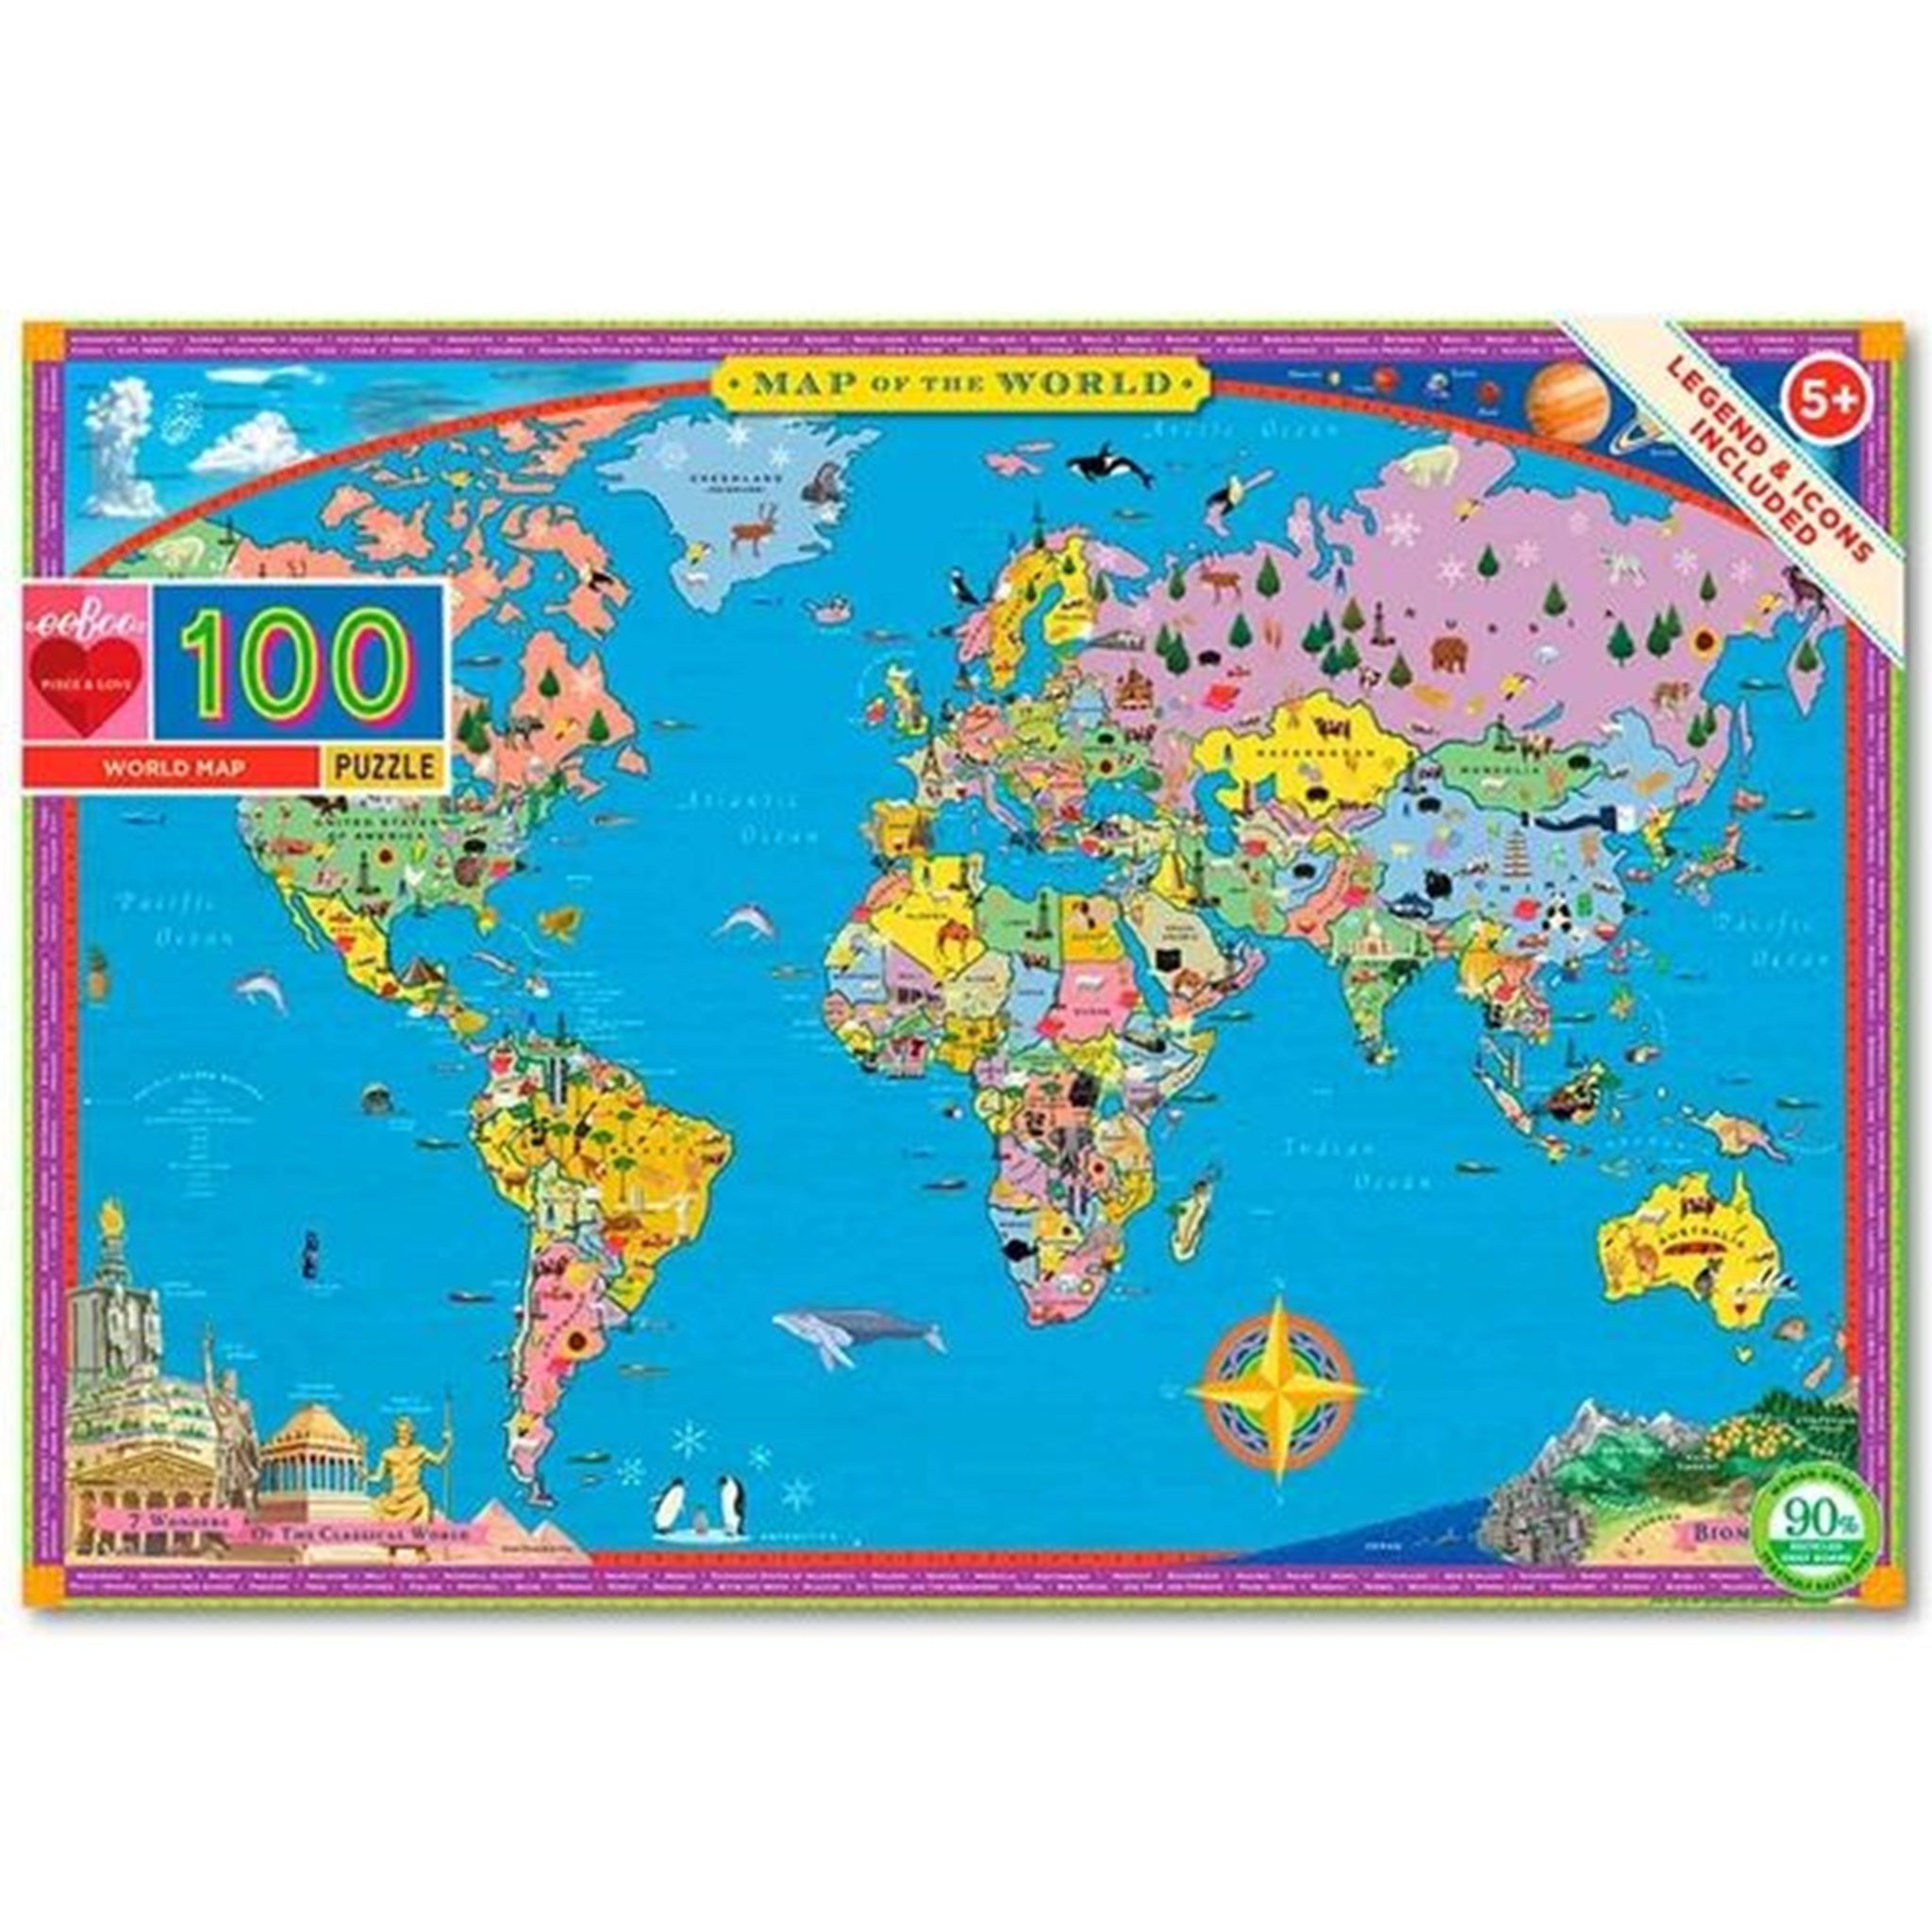 Eeboo Puzzle 100 Pieces - World Map